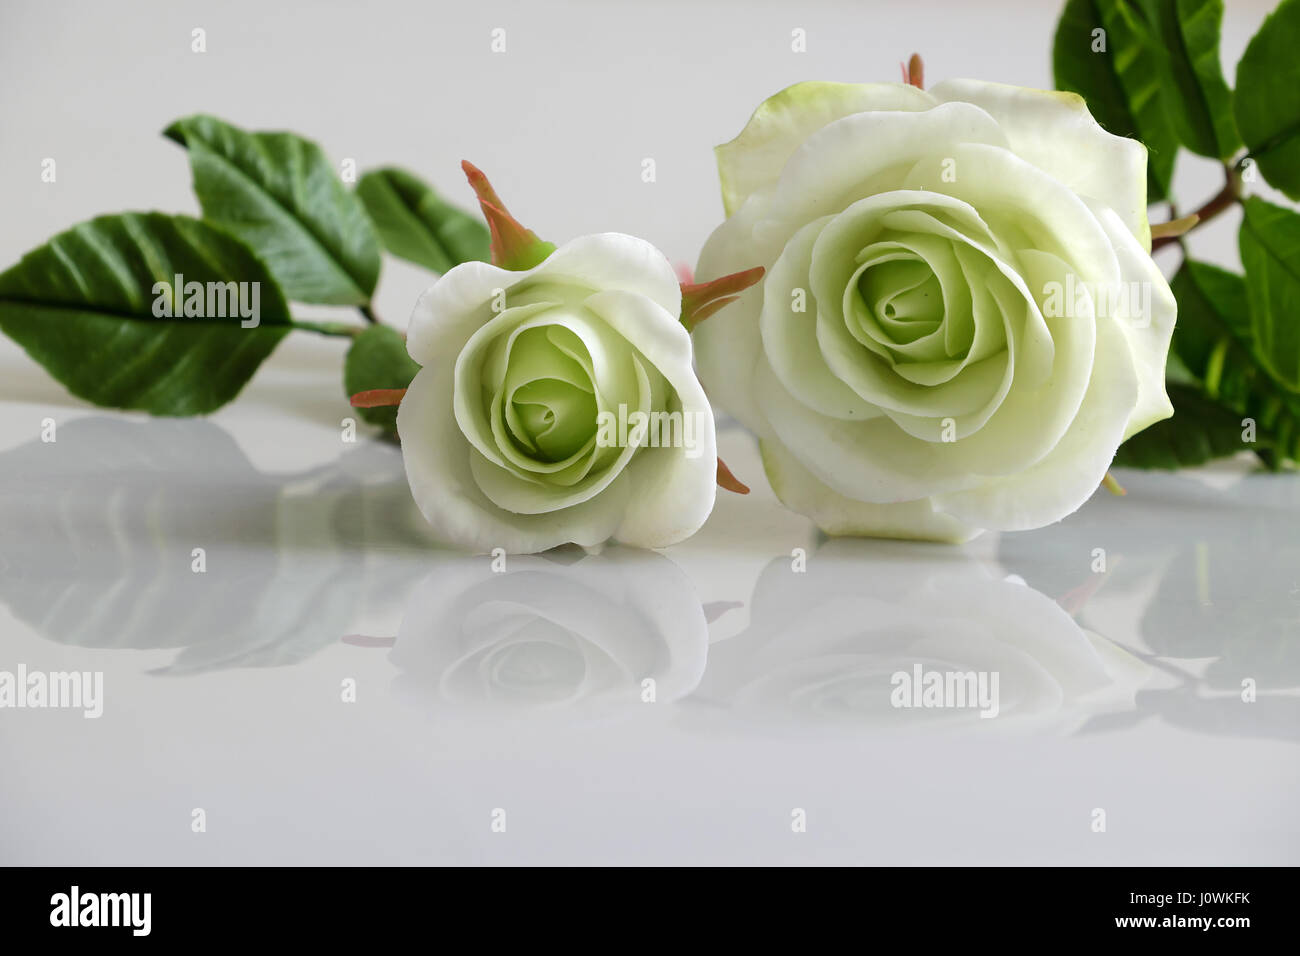 L'art d'argile merveilleux avec des roses blanches reflètent de fleurs sur fond blanc, de belles fleurs artificielles de l'artisanat habile avec Banque D'Images